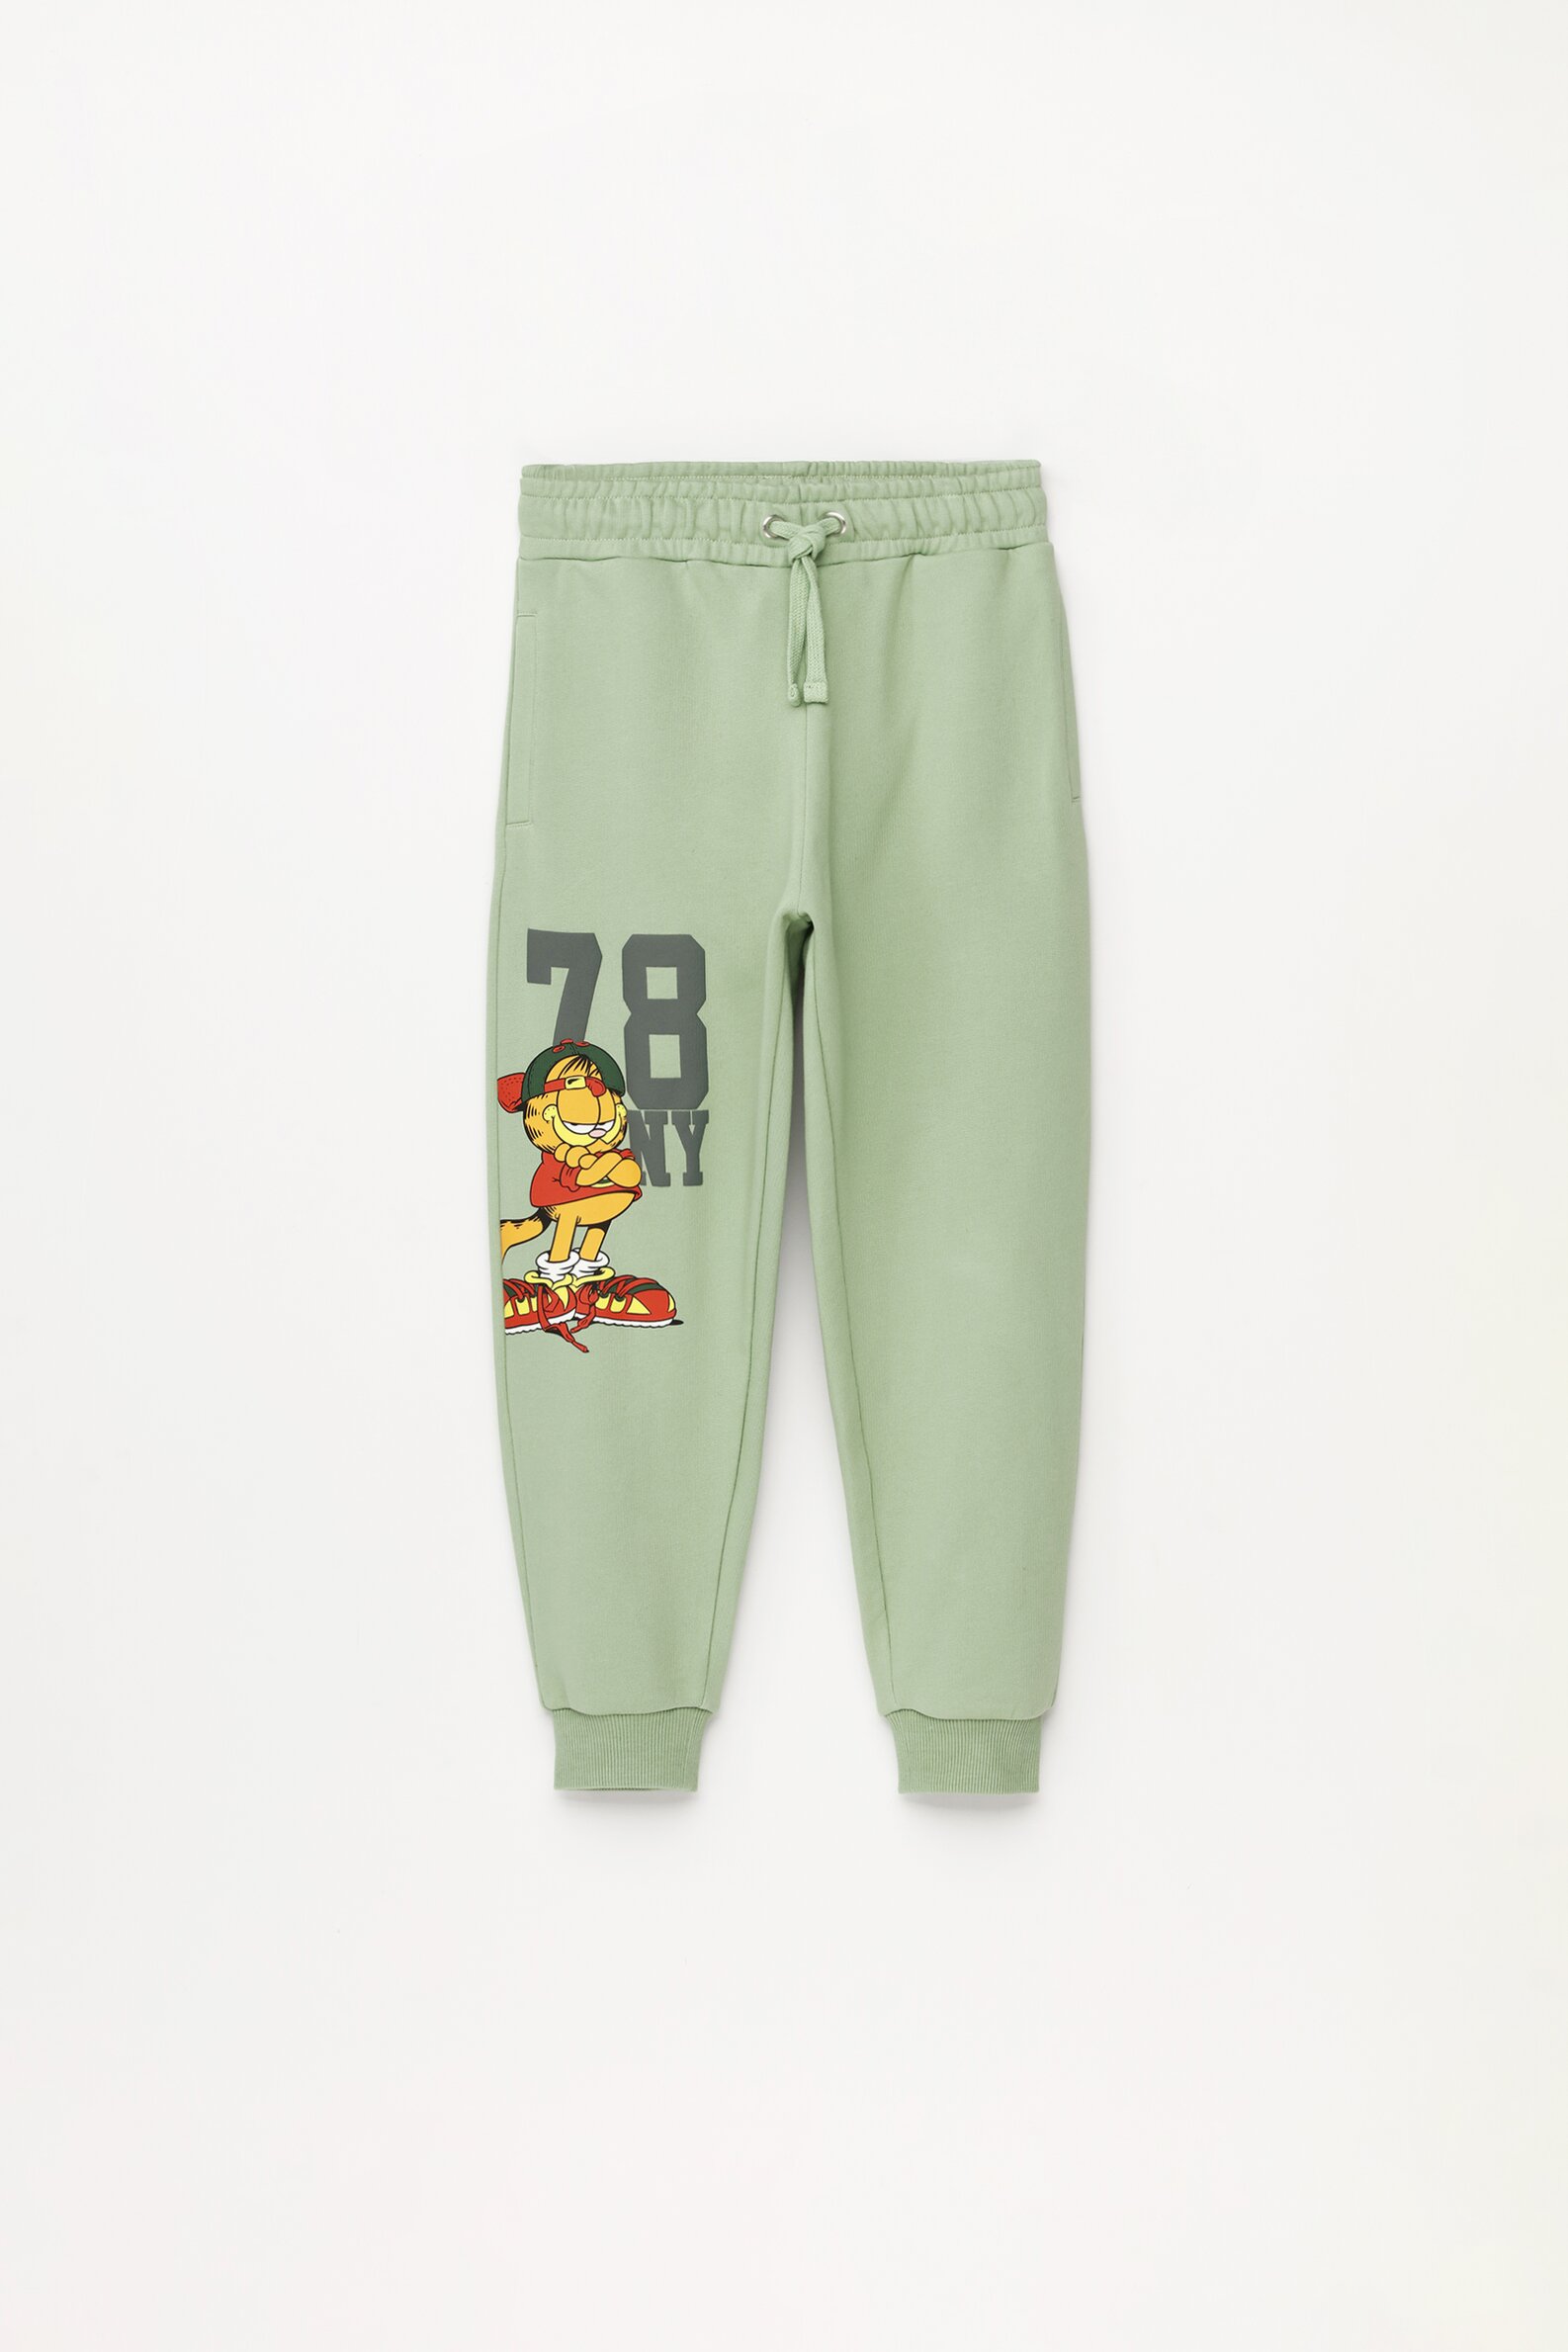 Garfield & Marks Women's Pants for sale | eBay